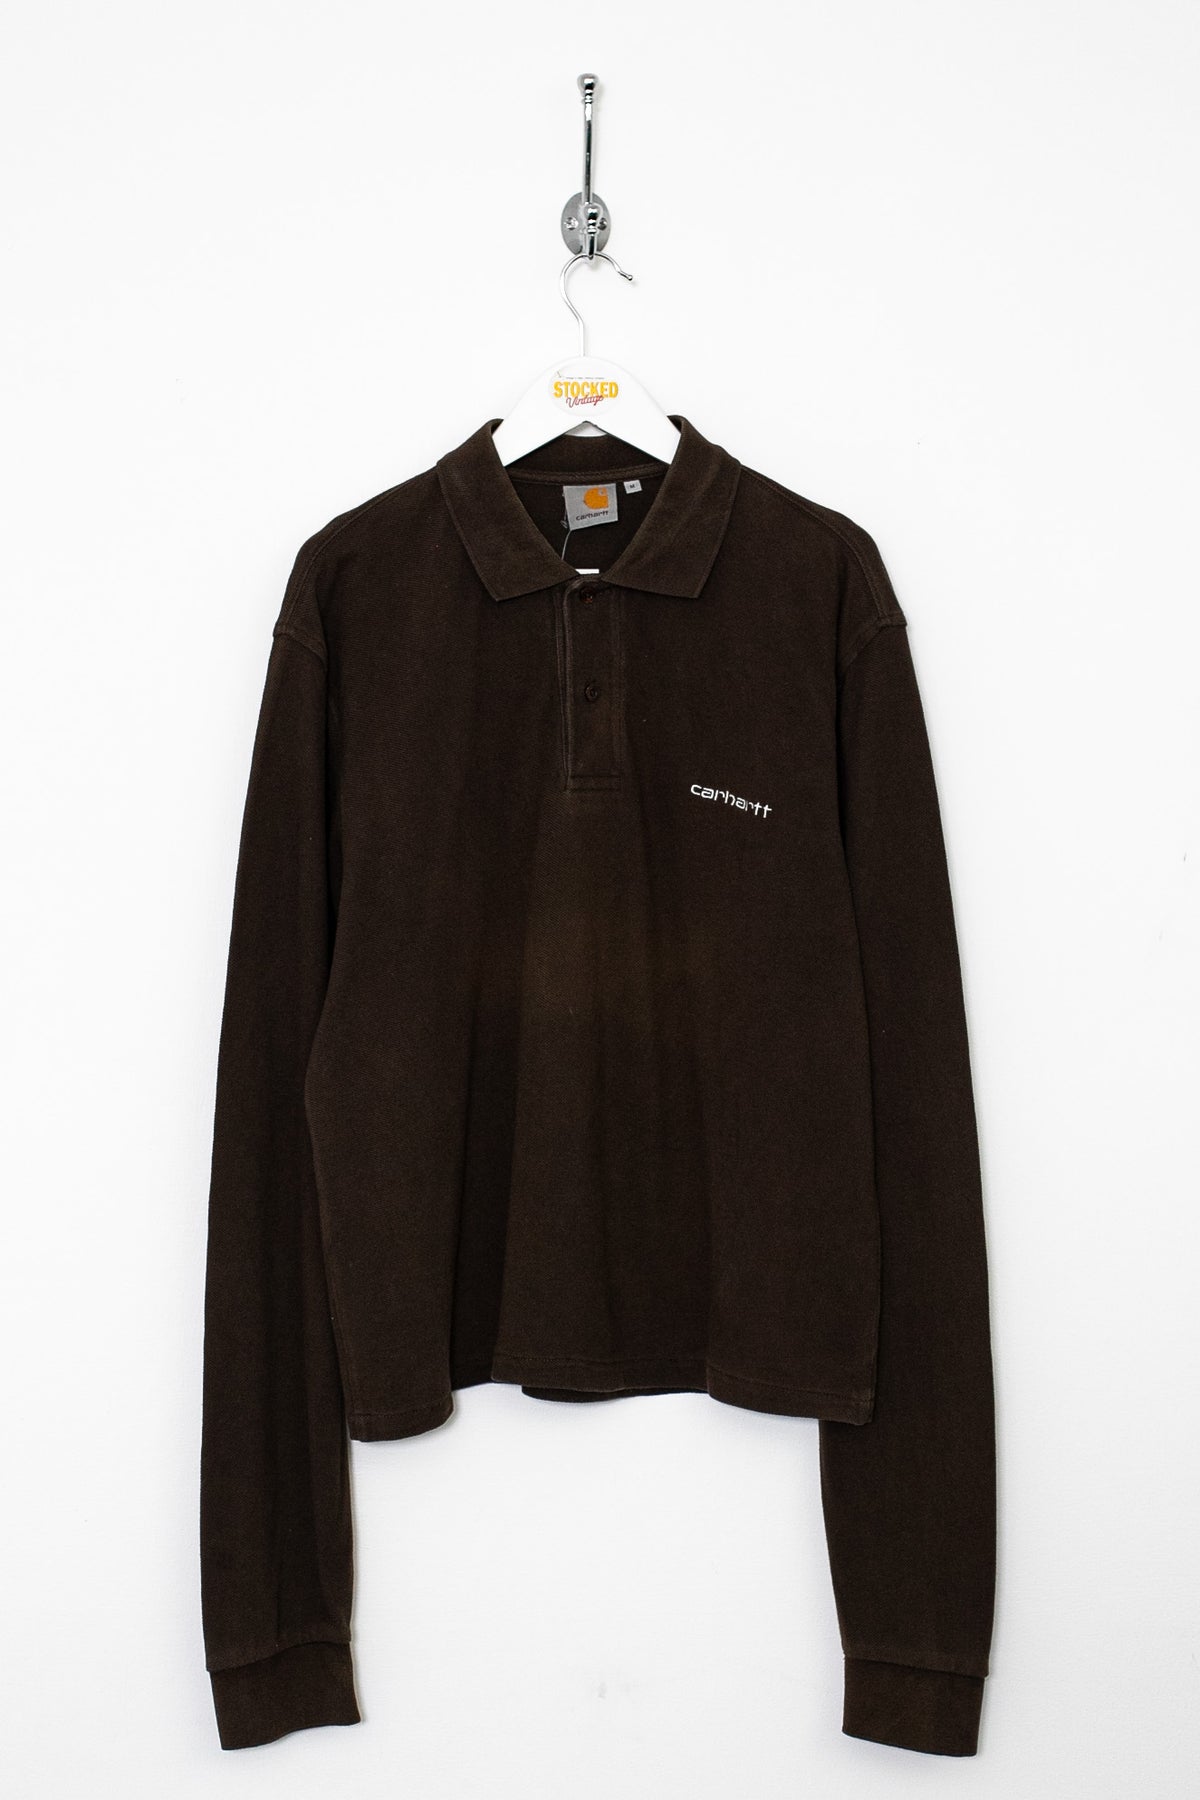 00s Carhartt Long Sleeve Polo Shirt (M)